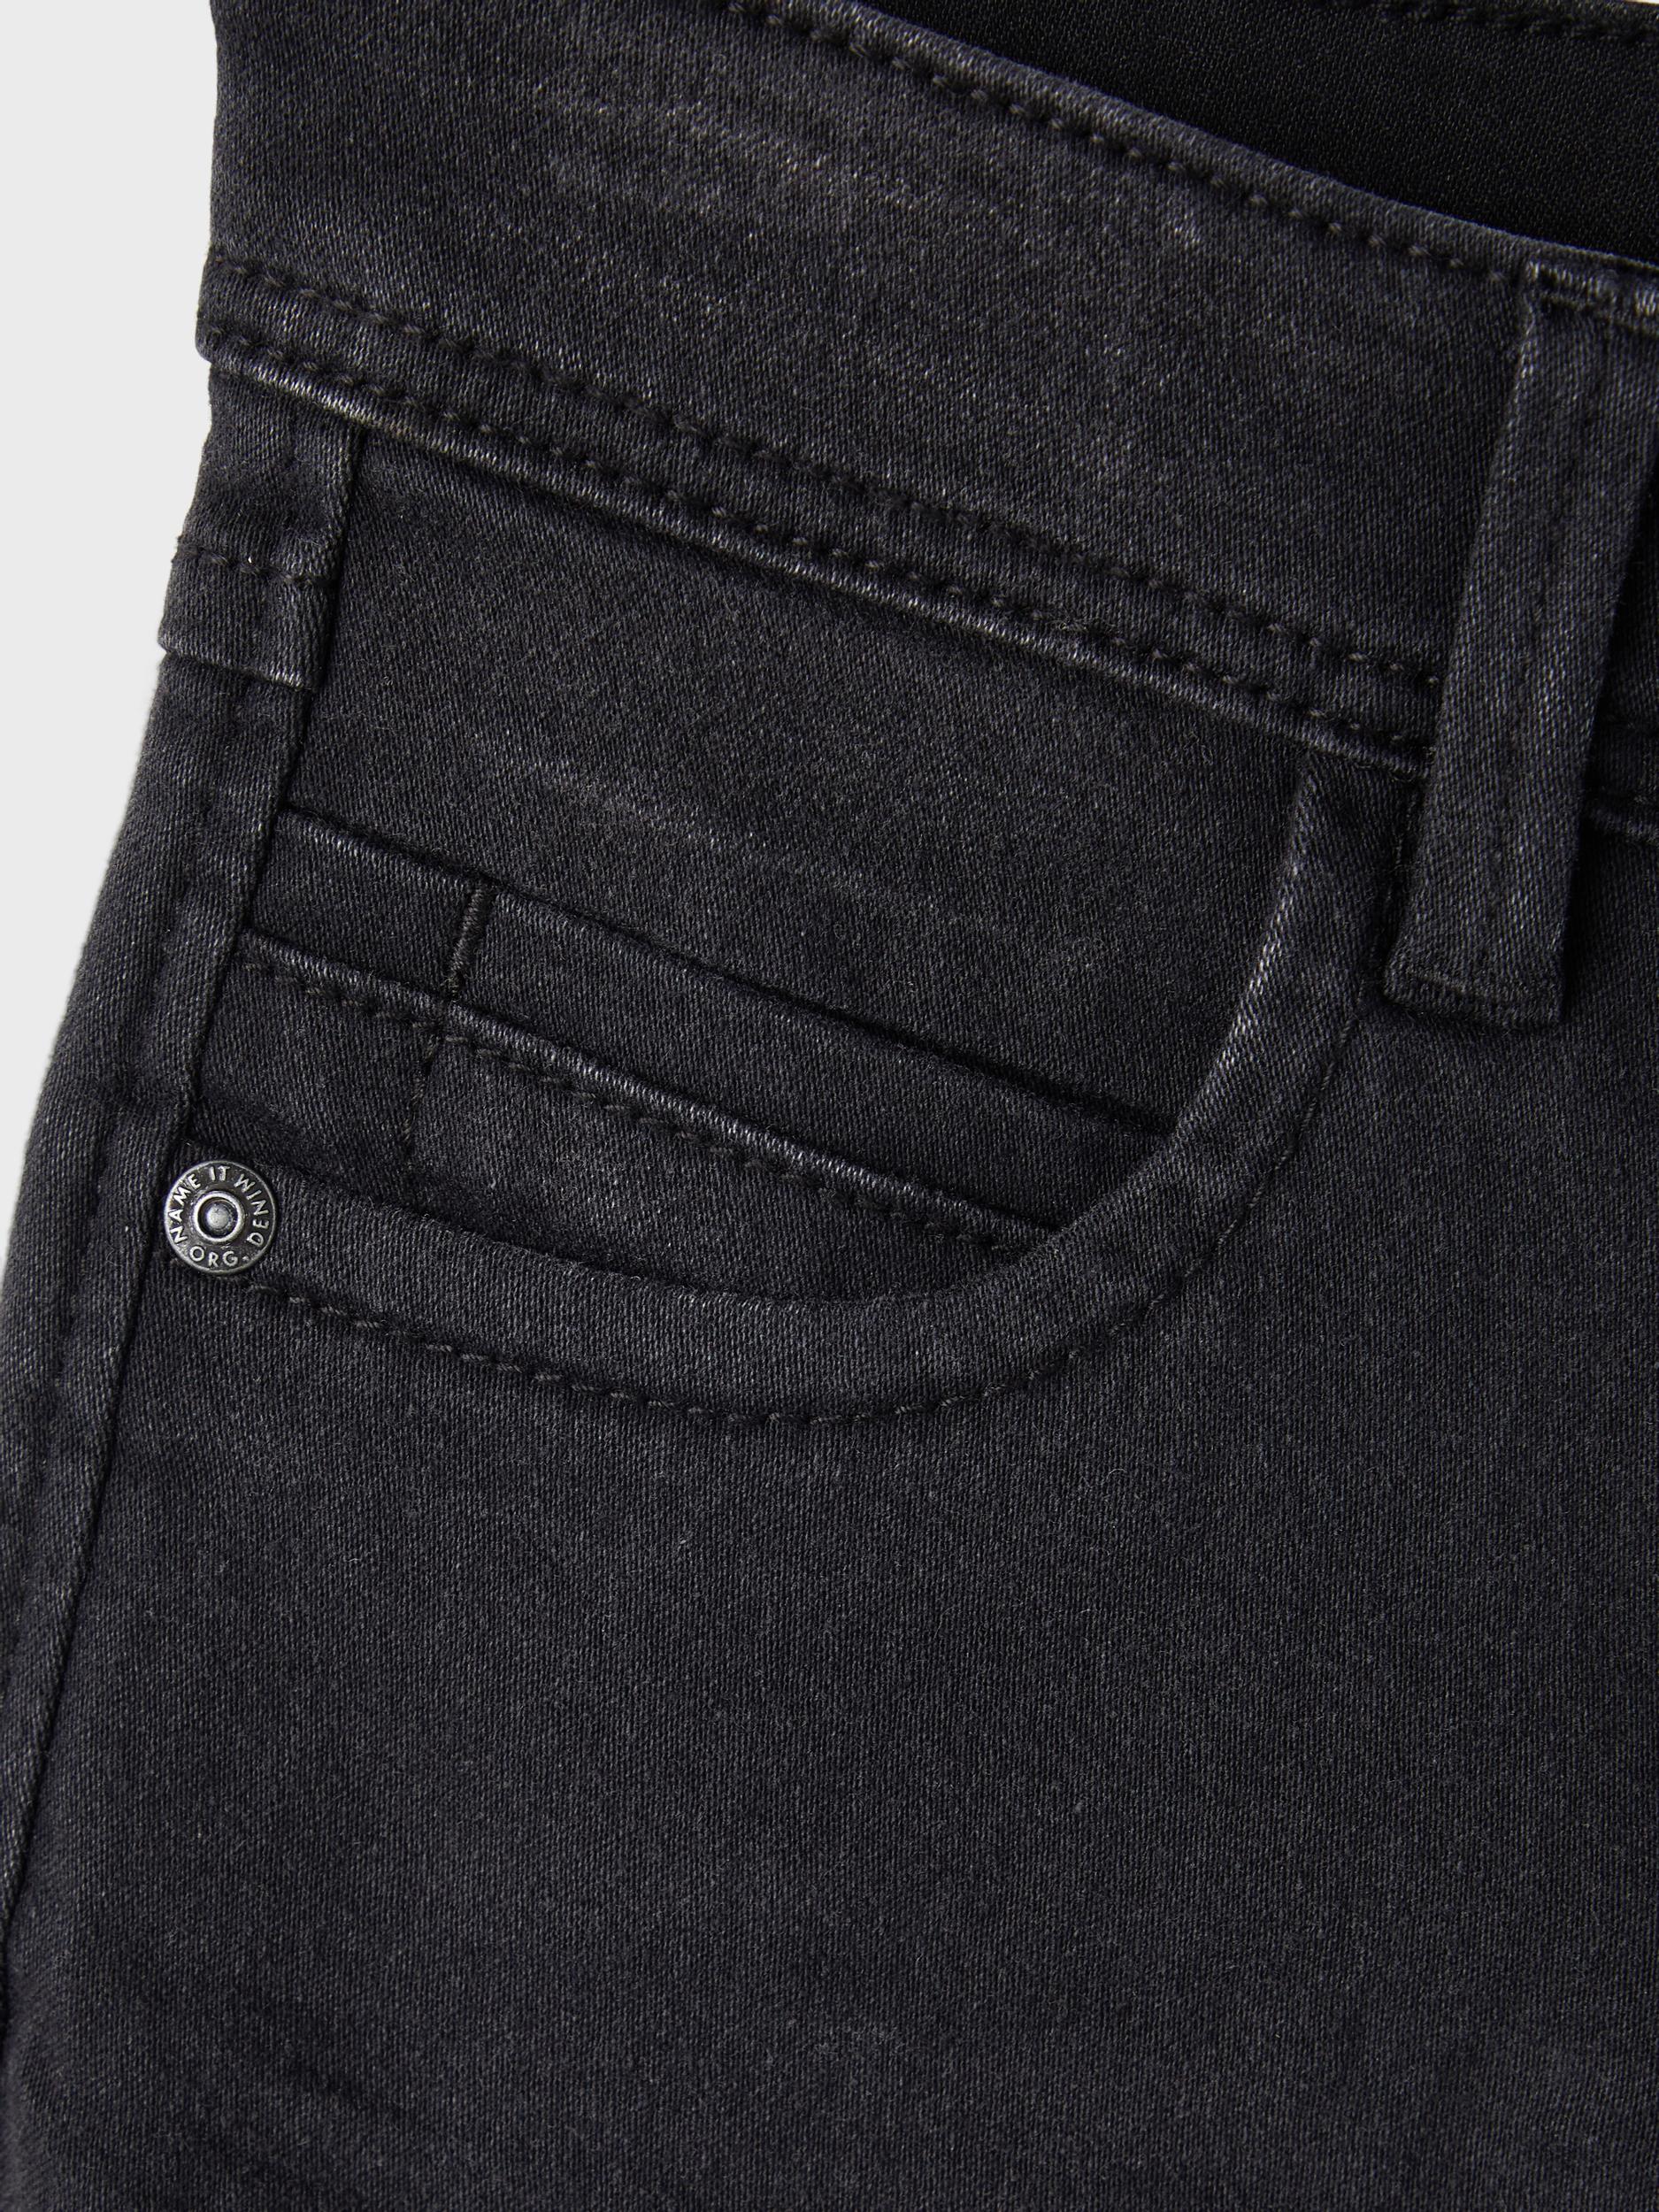 Black Silas Slim Fit 2467 Pant Noos - Pocket View